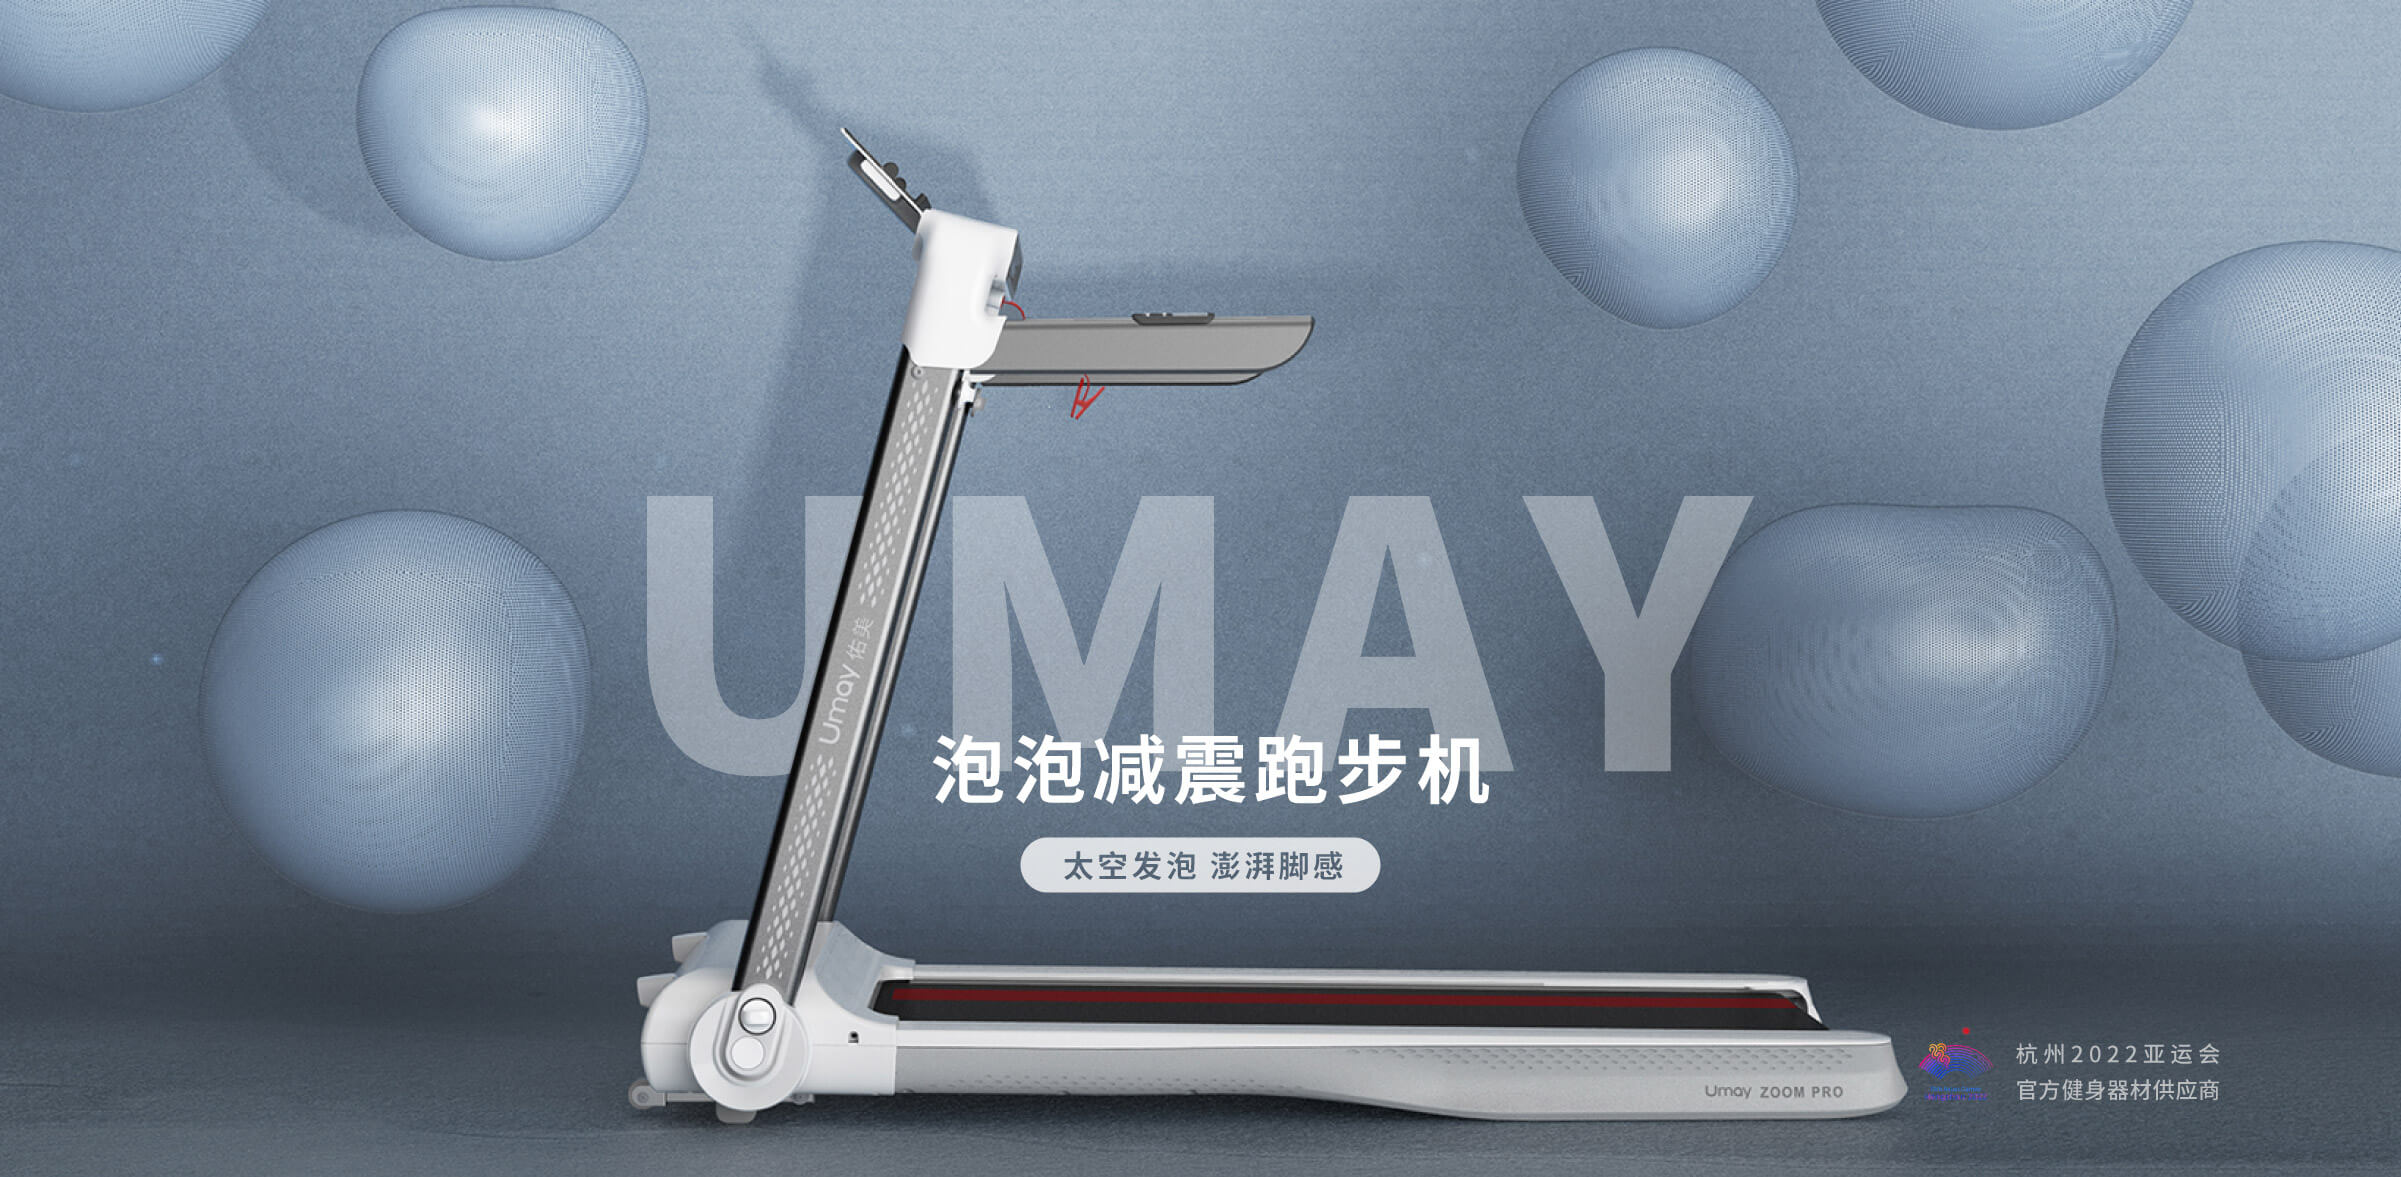 减震跑步机-杭州工业设计产品